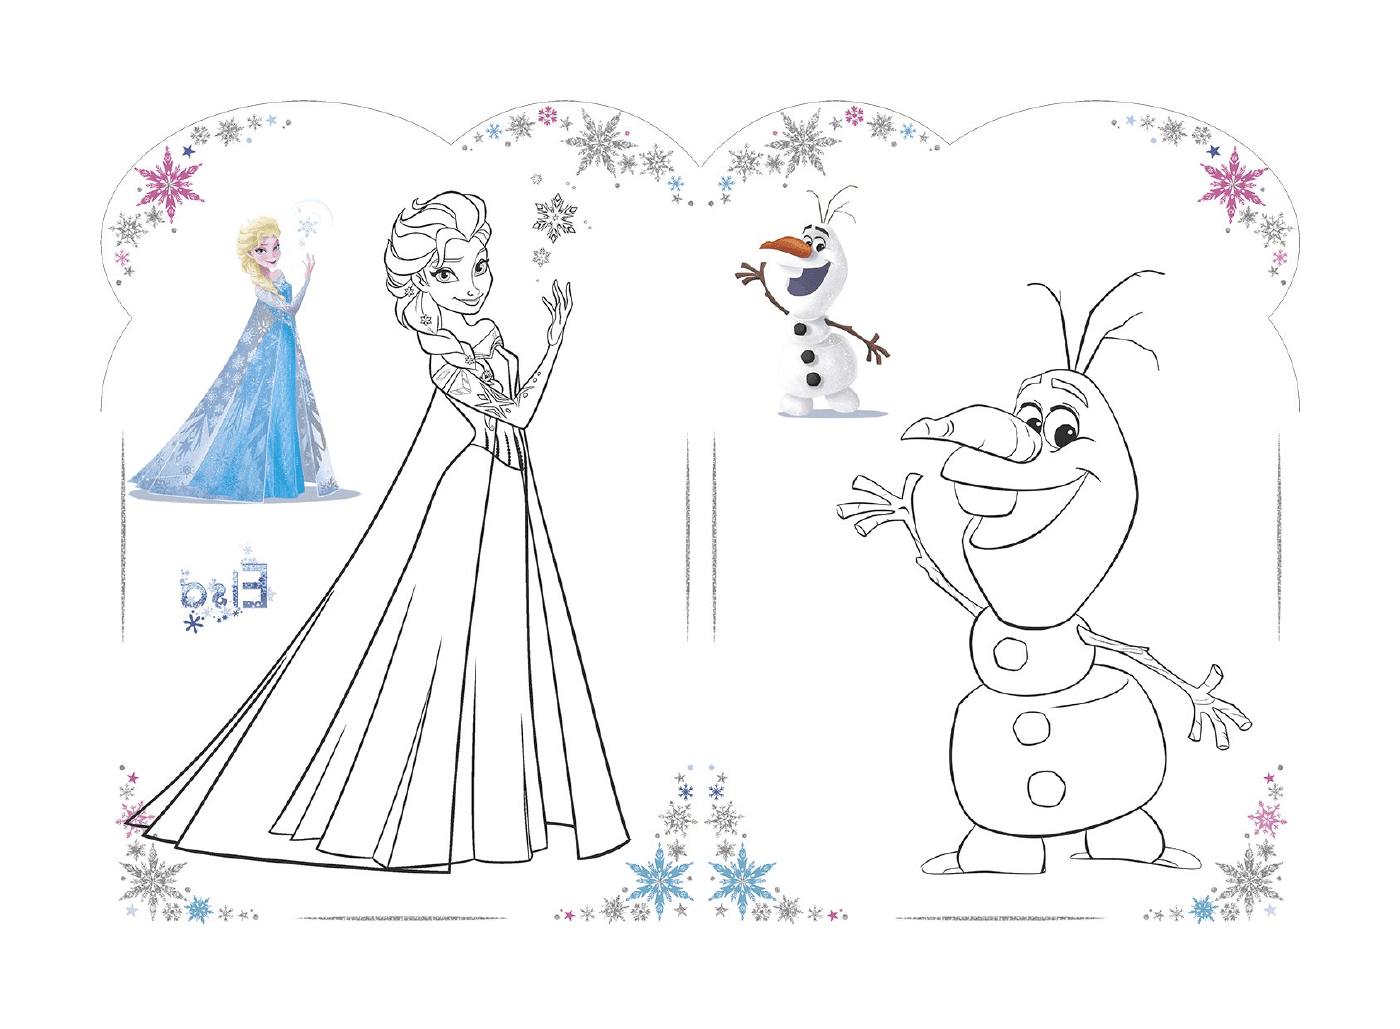  Olaf e Elsa di Disney's Snow Queen nel 2018 